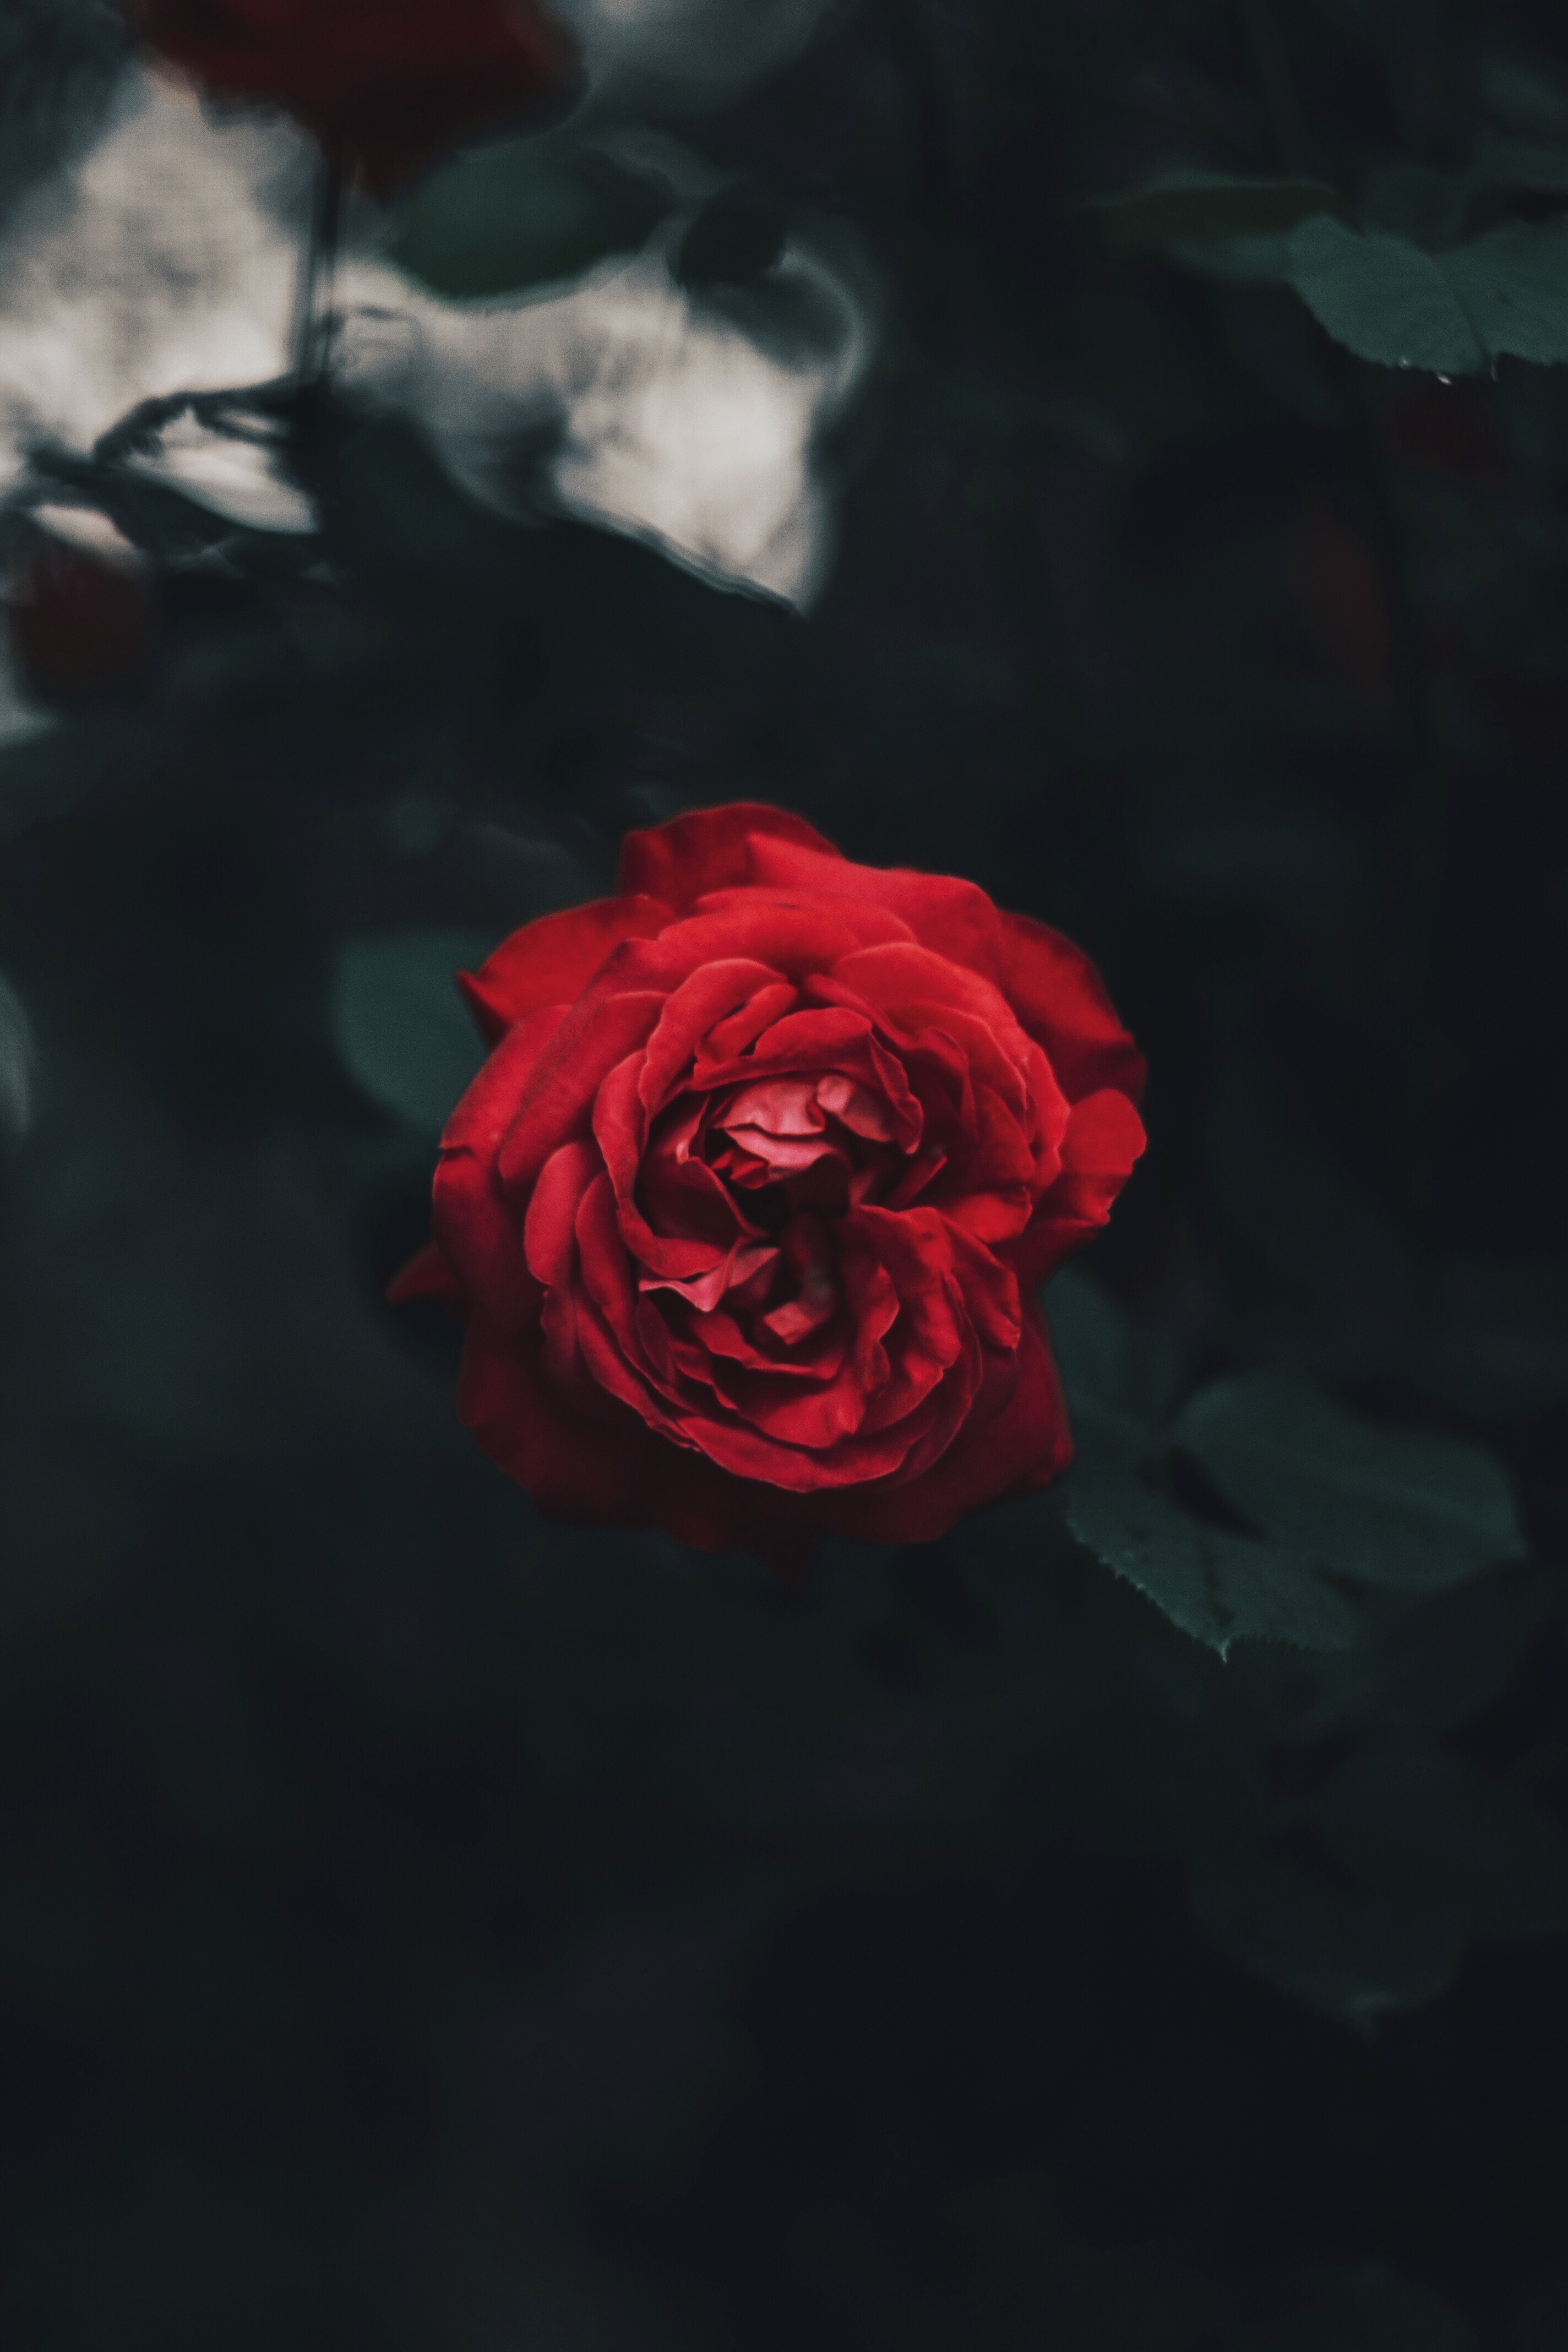 rose flower, flowers, red, dark, rose, bud, blur, smooth, garden